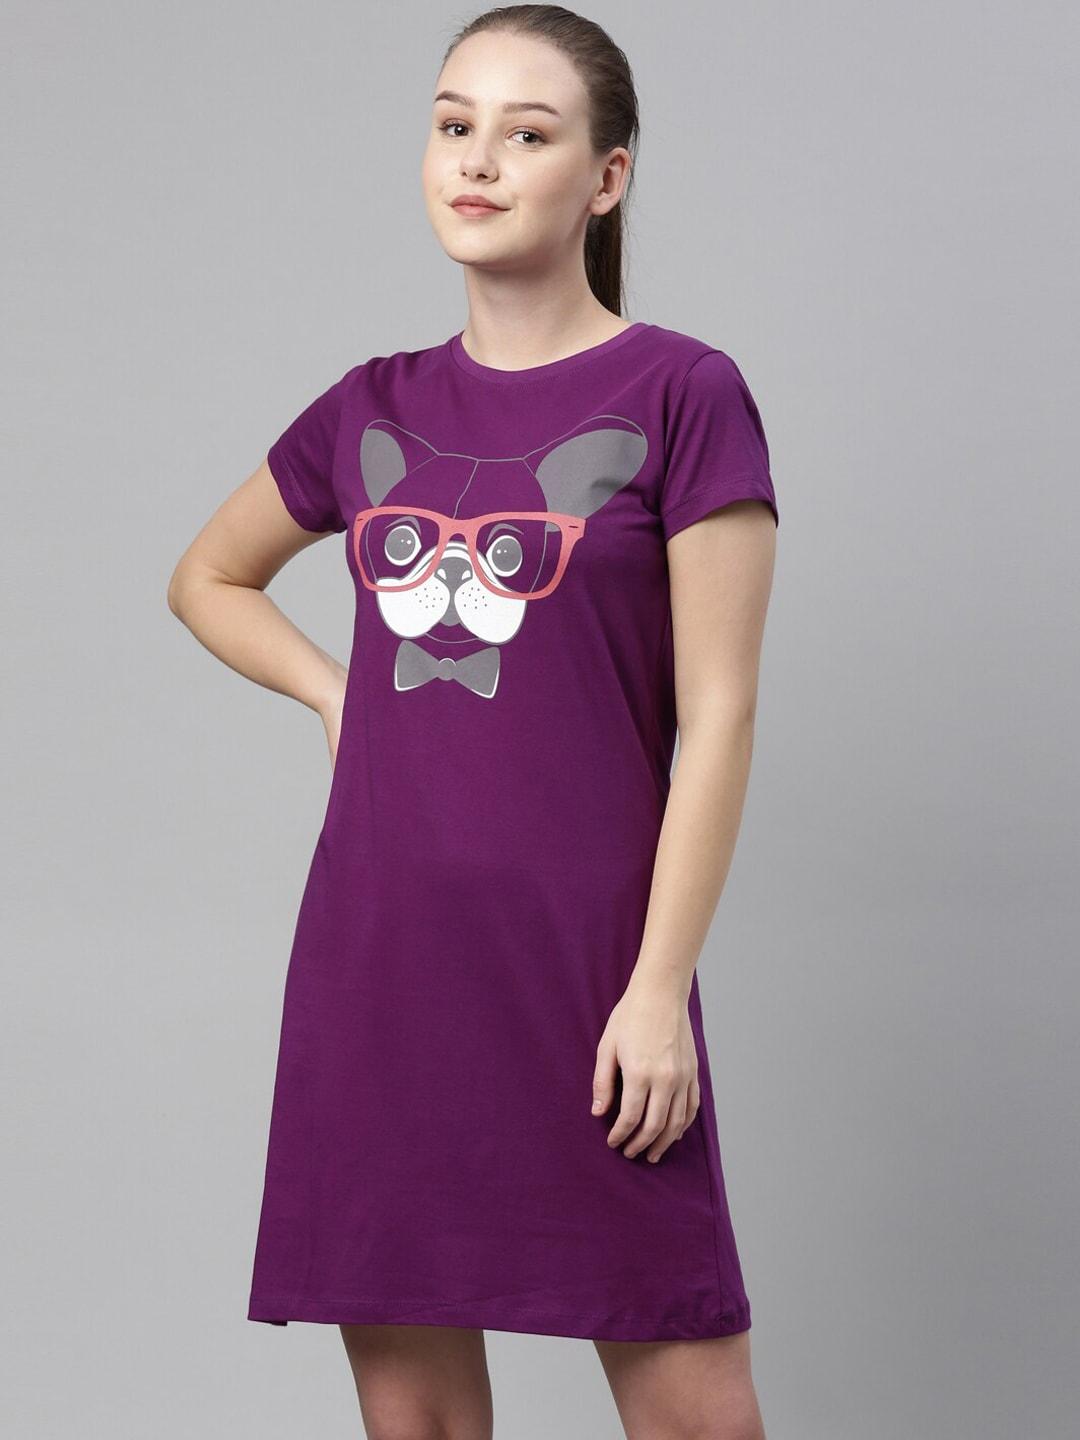 laya-purple-printed-cotton-t-shirt-nightdress